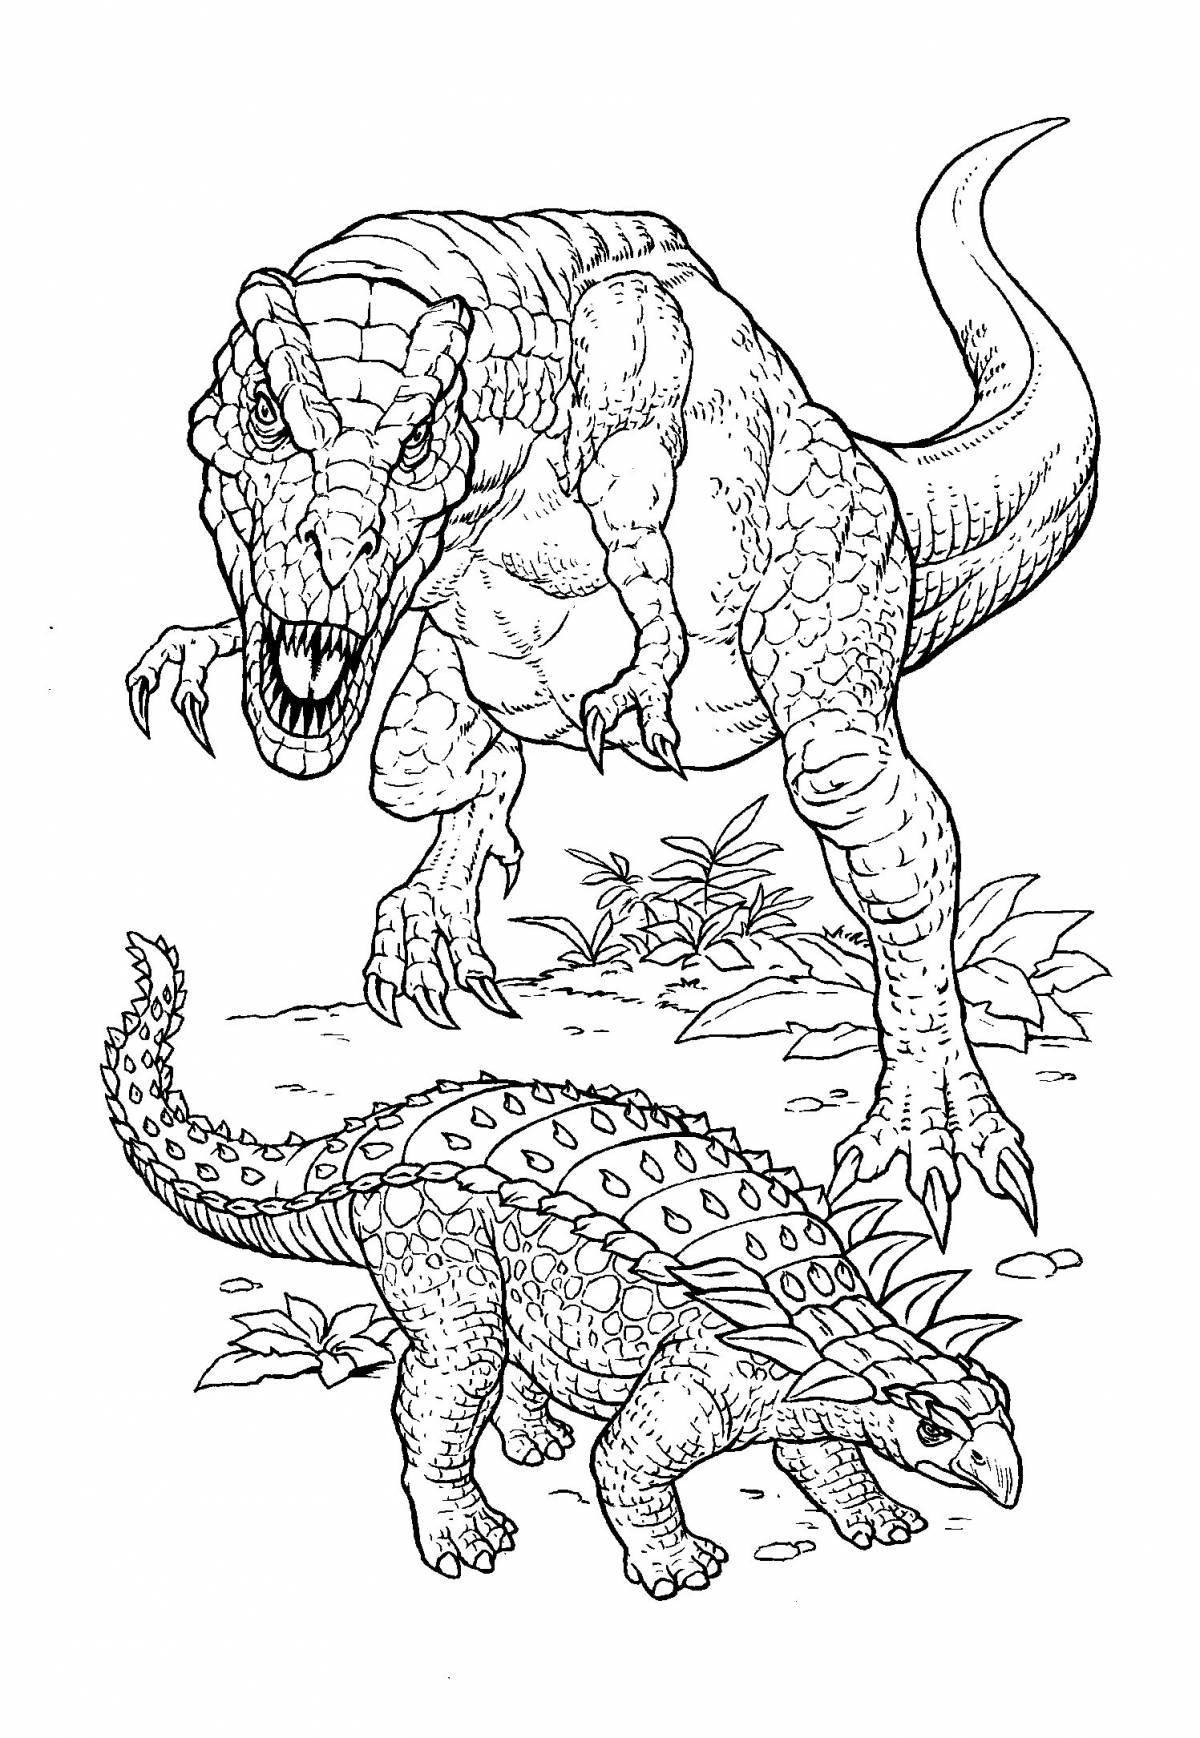 Vicious раскраска динозавр хищник